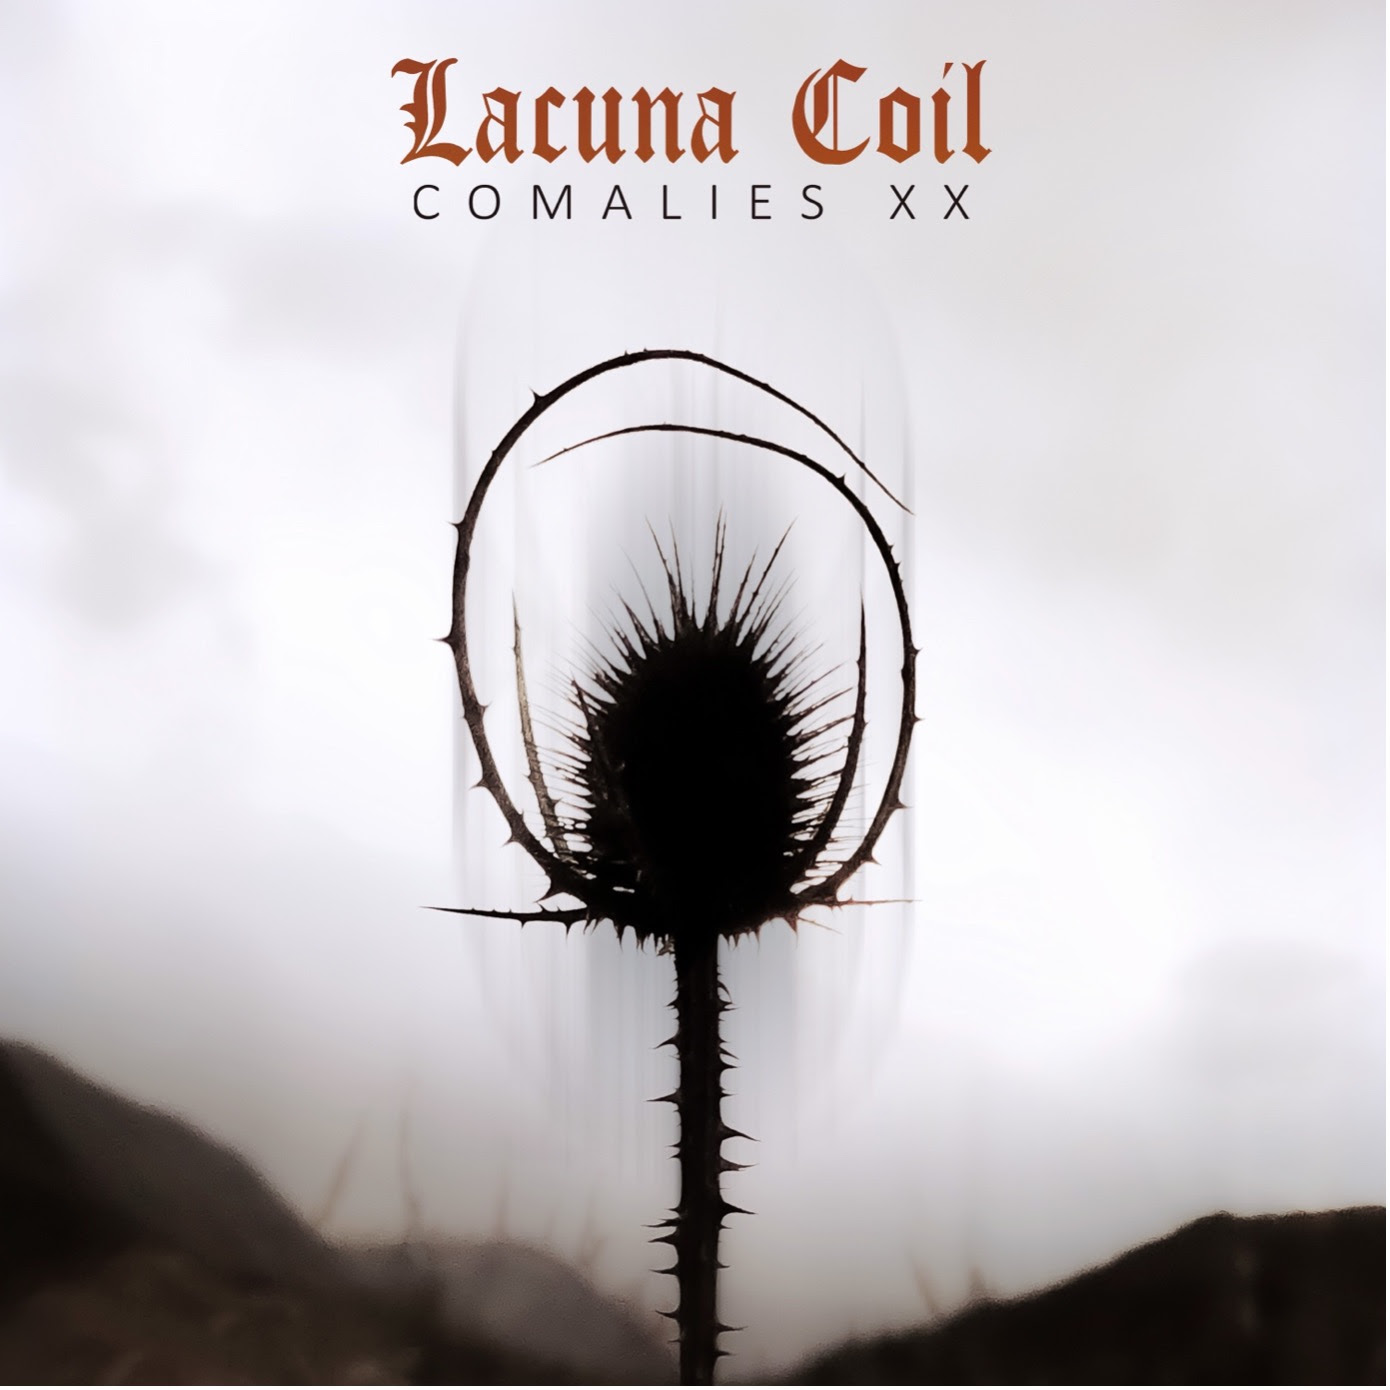 Lacuna Coil lanza el nuevo single y vídeo de “Tight Rope XX” y anuncia el lanzamiento de “Comalies XX”